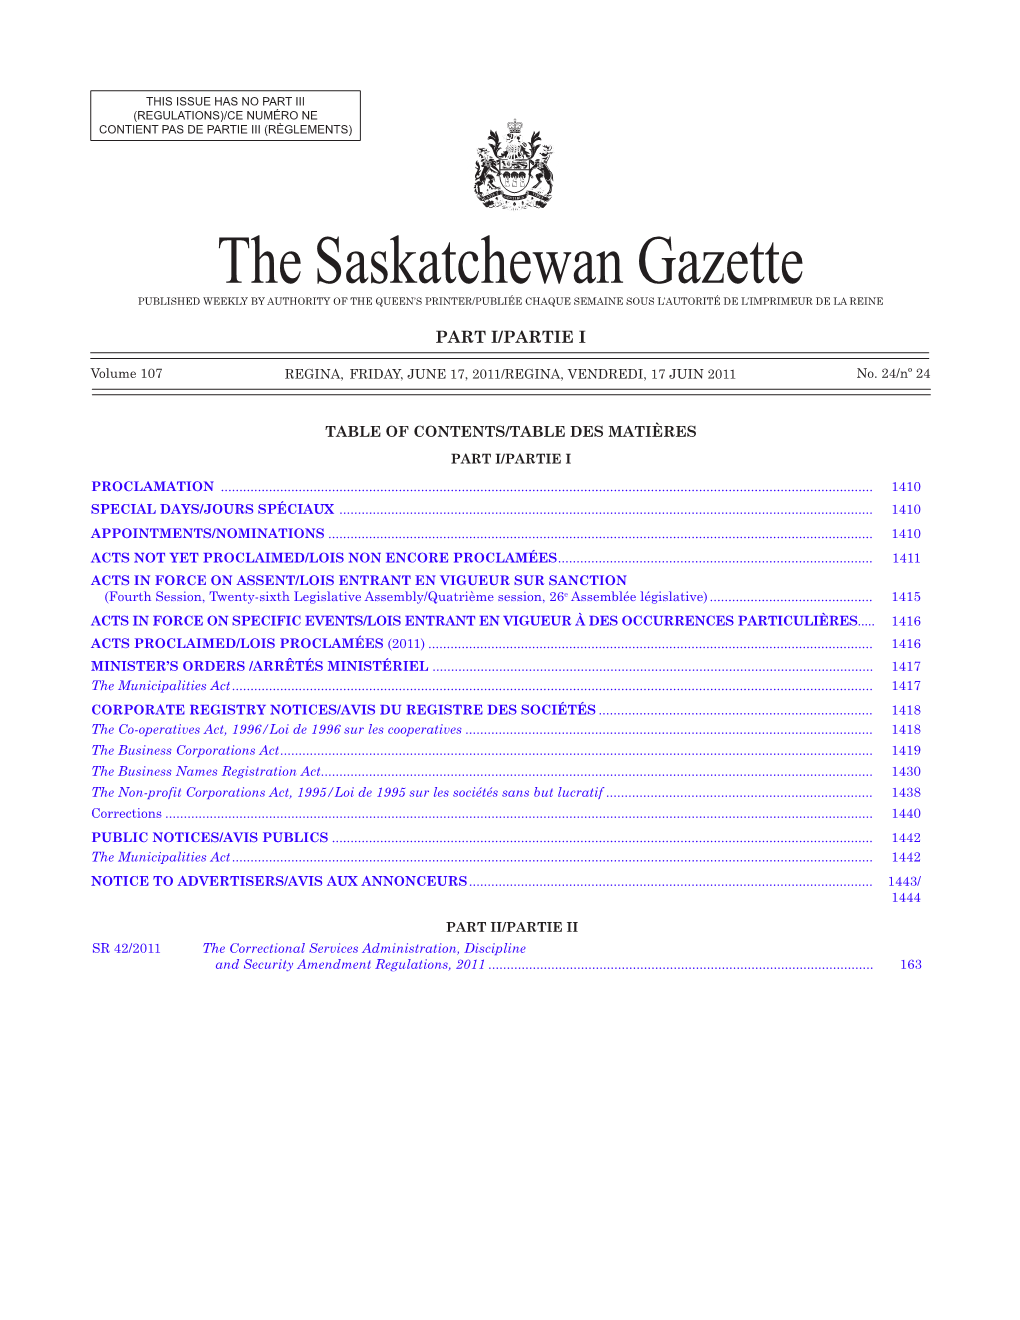 The Saskatchewan Gazette, June 17, 2011 1409 (Regulations)/Ce Numéro Ne Contient Pas De Partie Iii (Règlements)